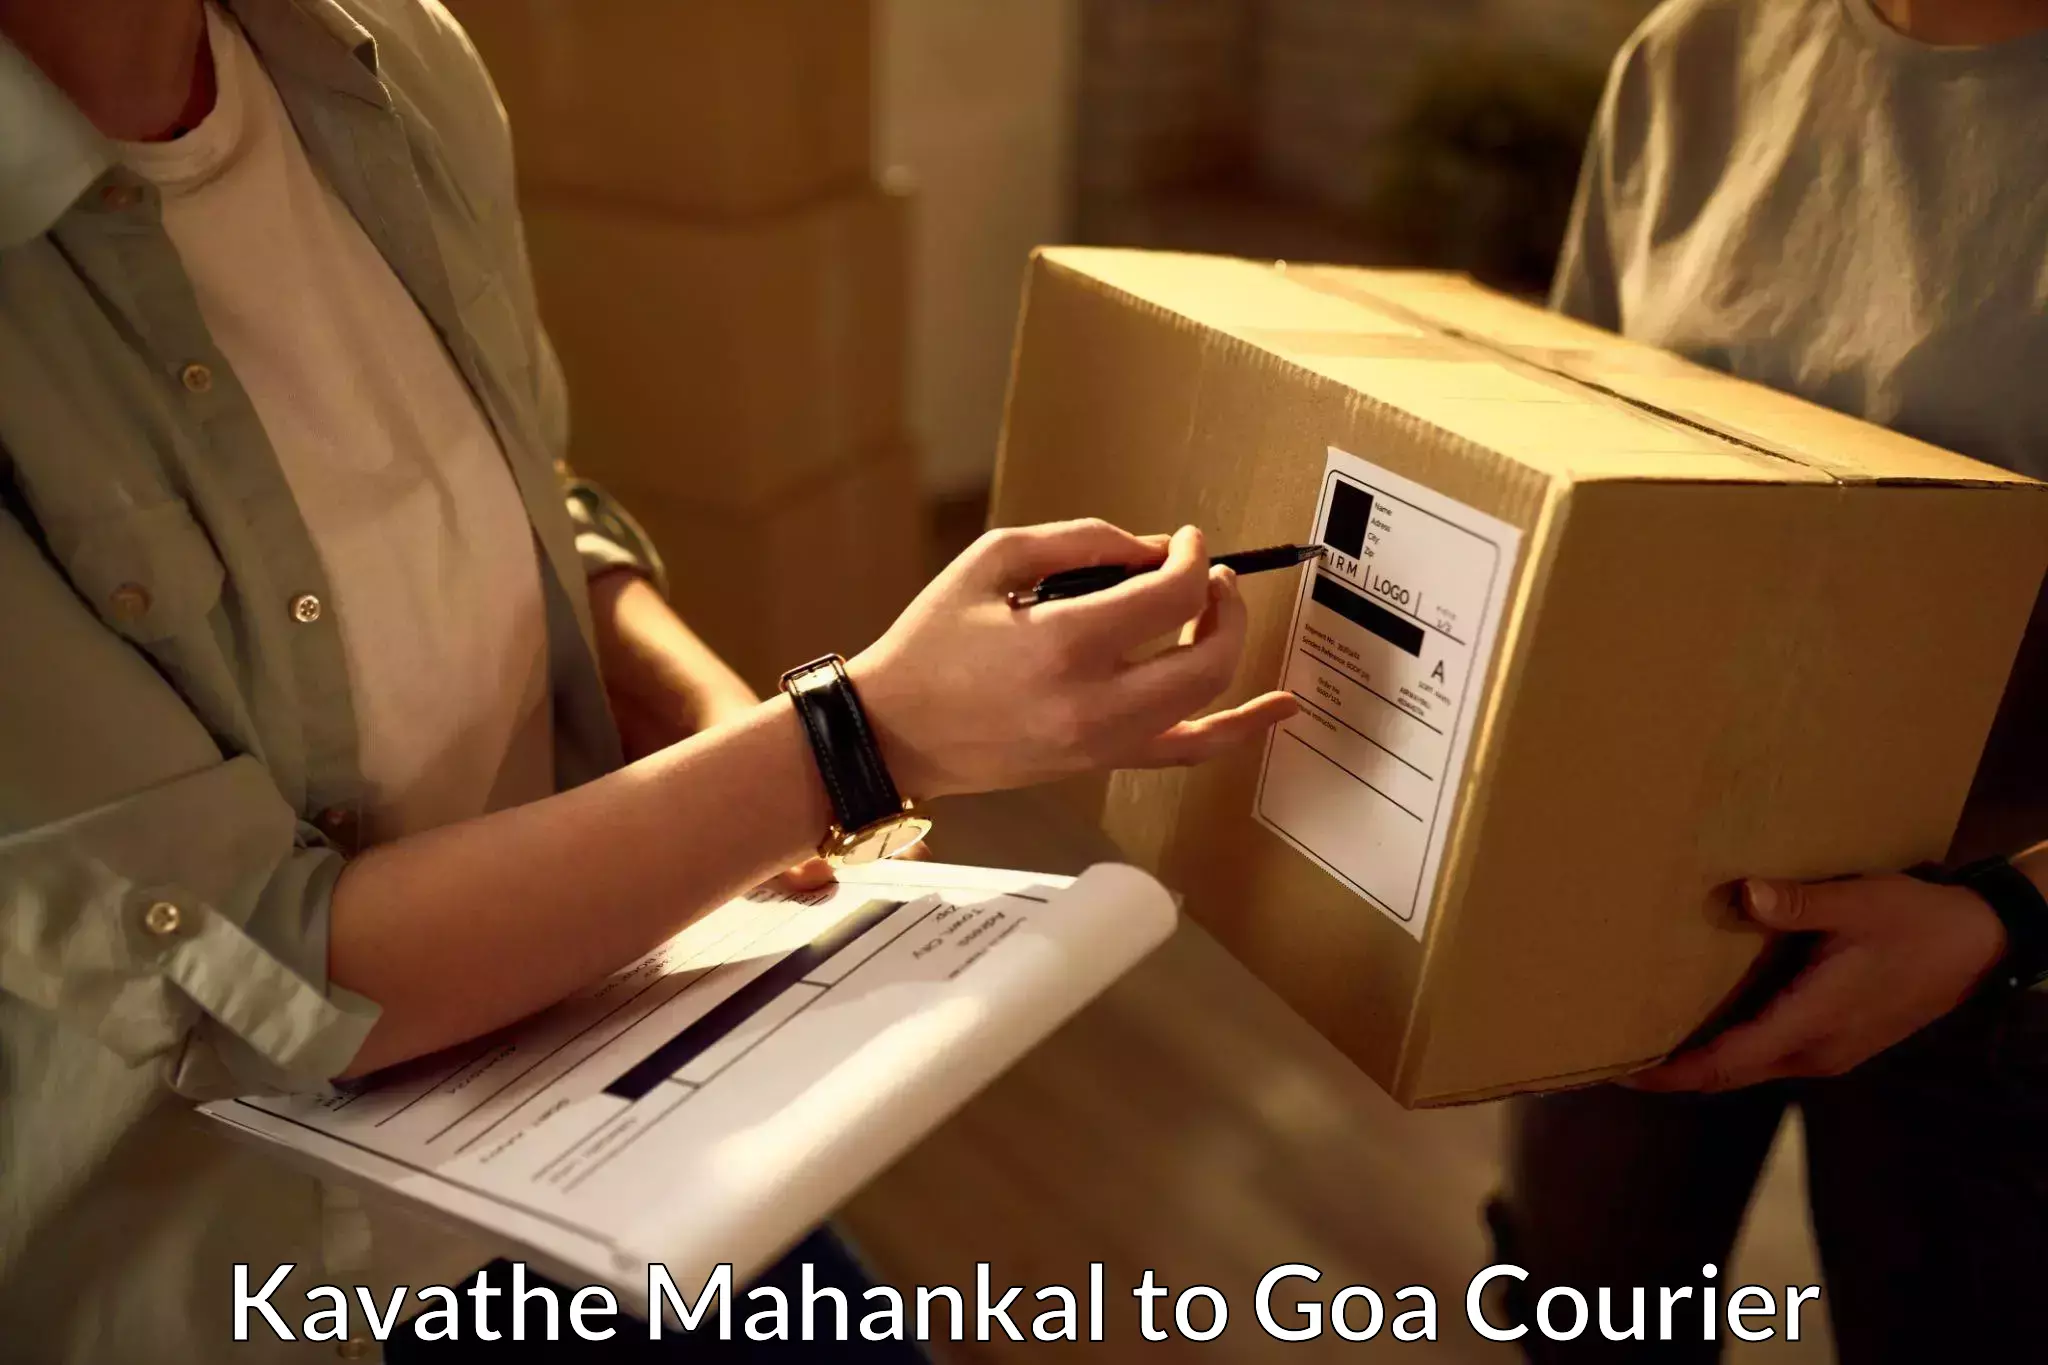 Courier service partnerships Kavathe Mahankal to Mormugao Port